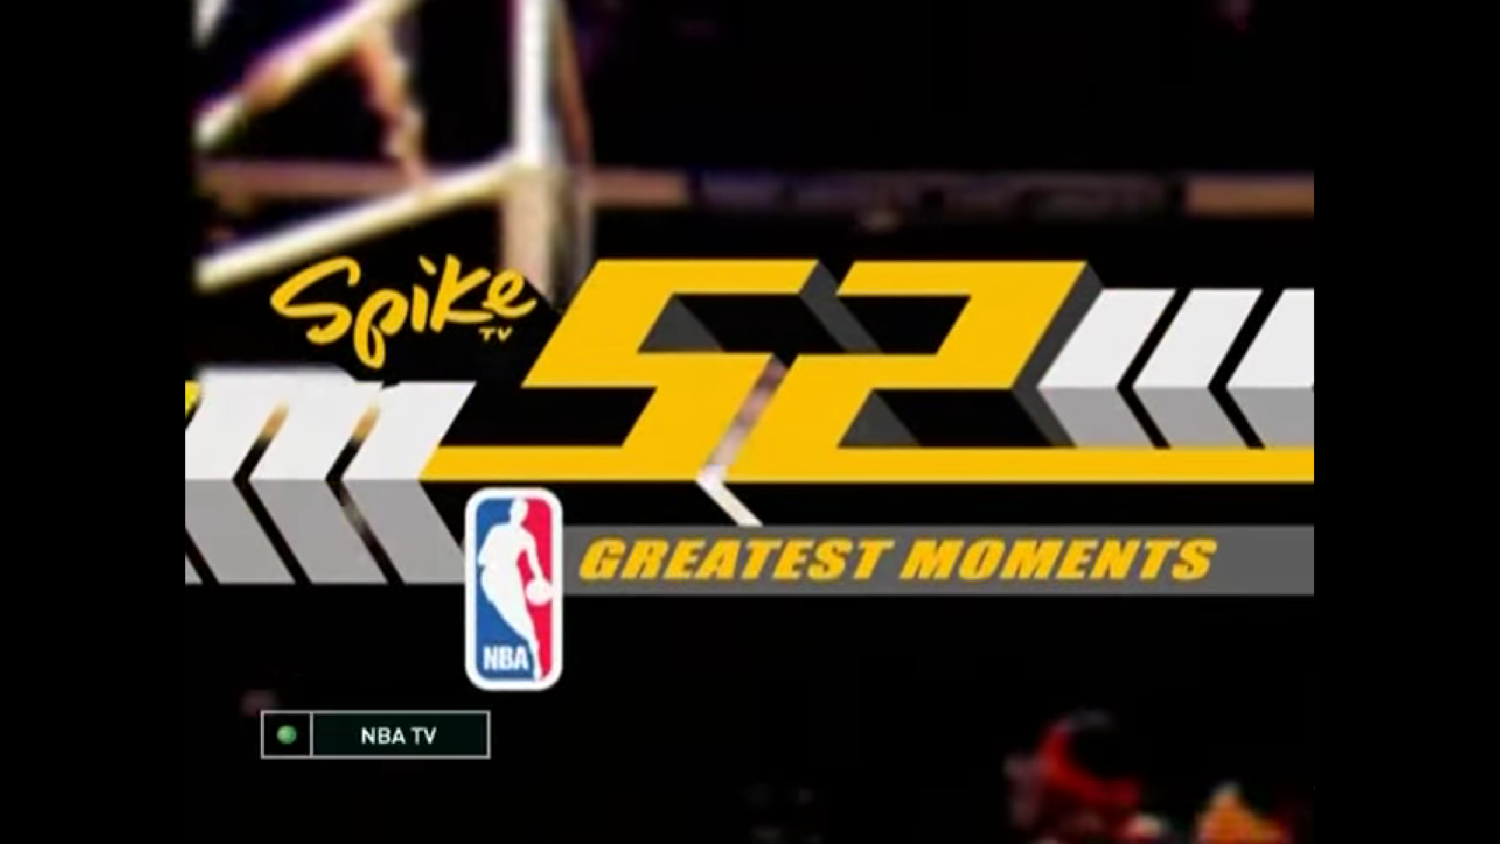 52 величайших момента в истории NBA. Телеканал NBA TV